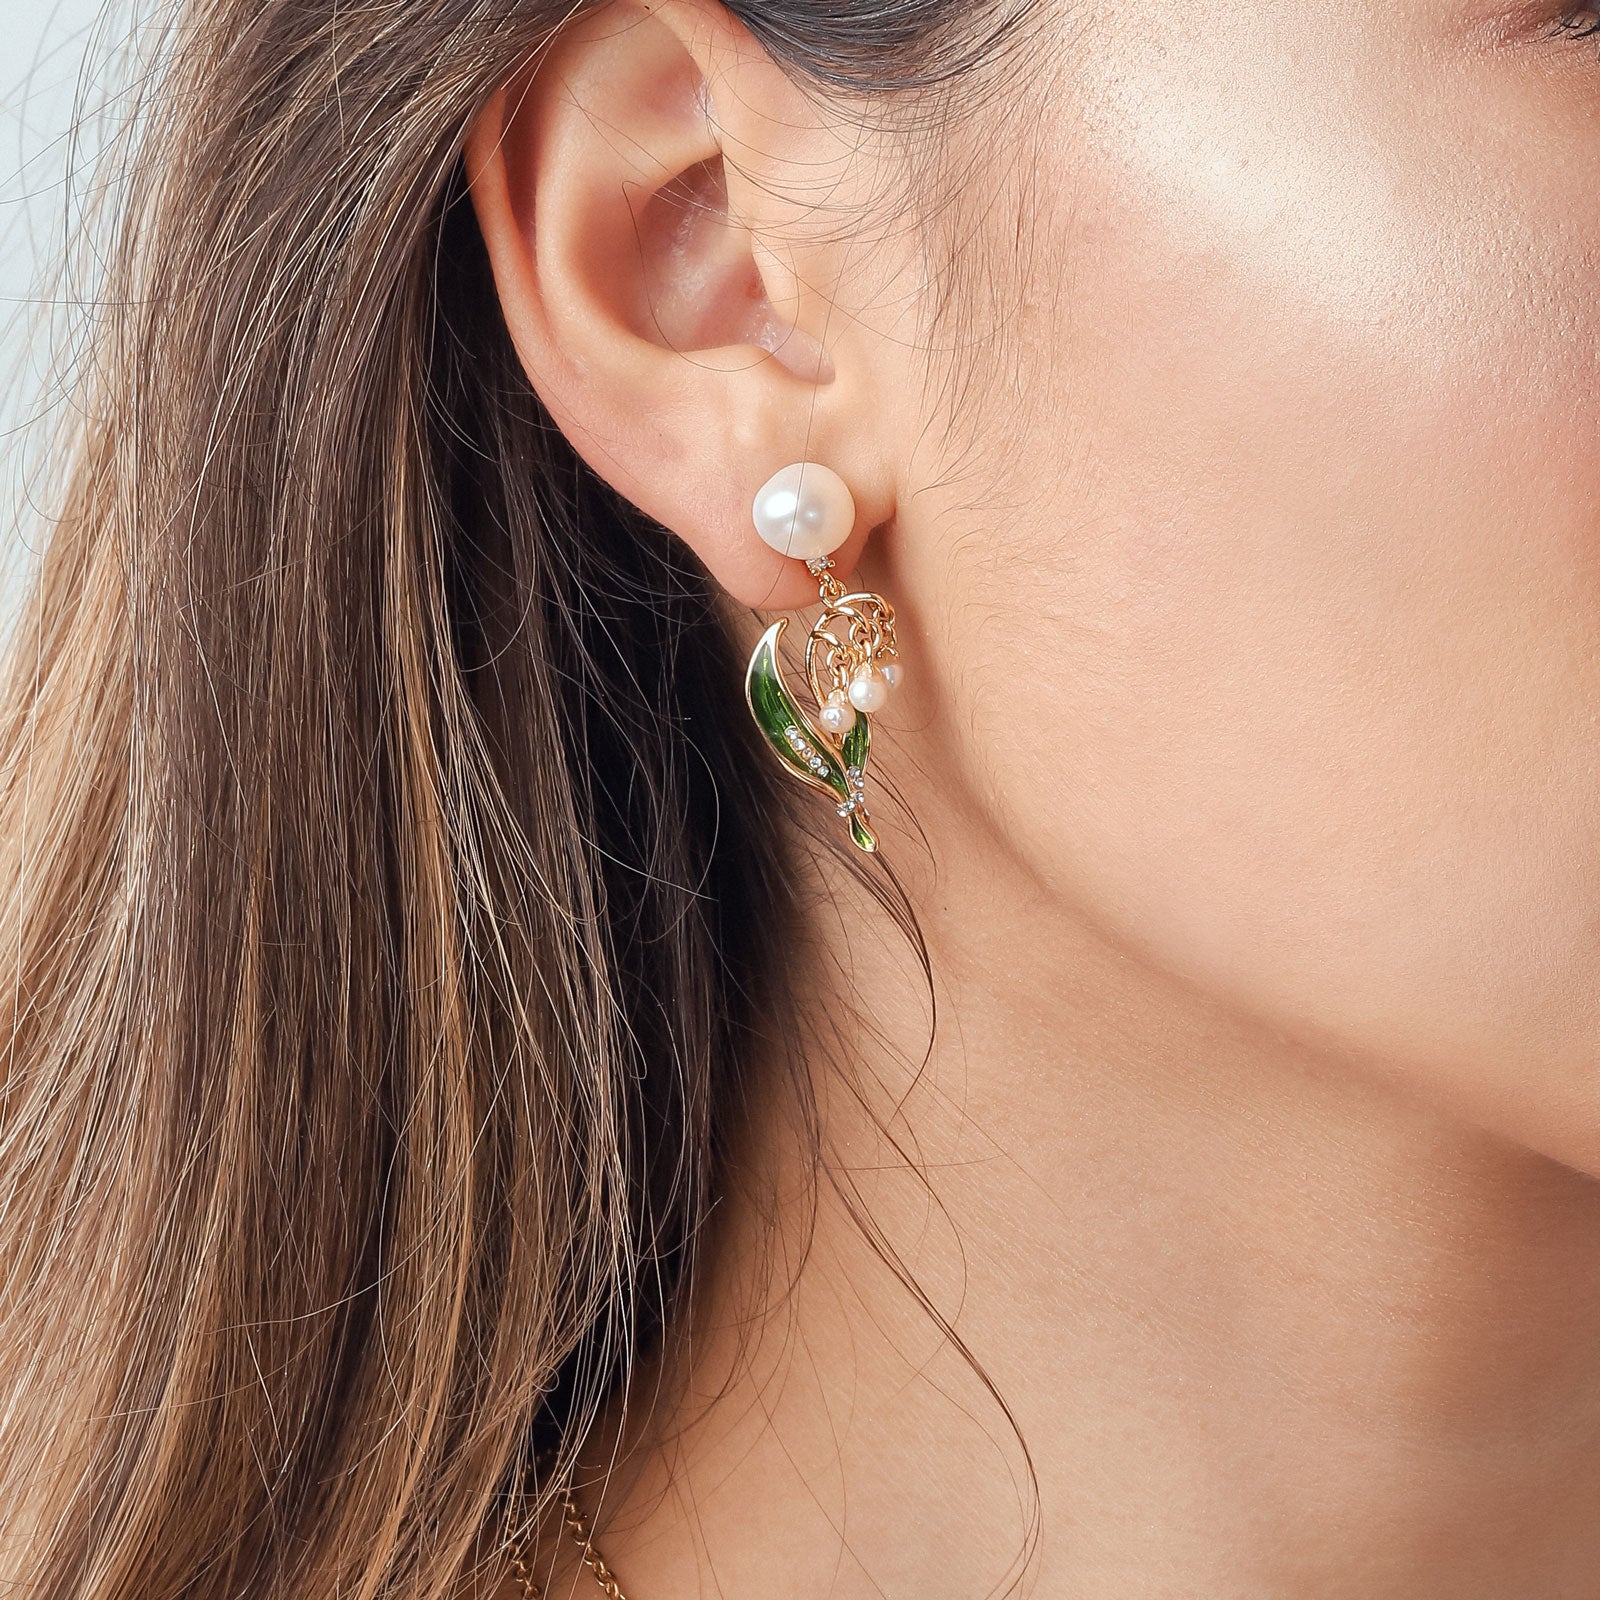 lilies personalized gifts enamel earring jewelry